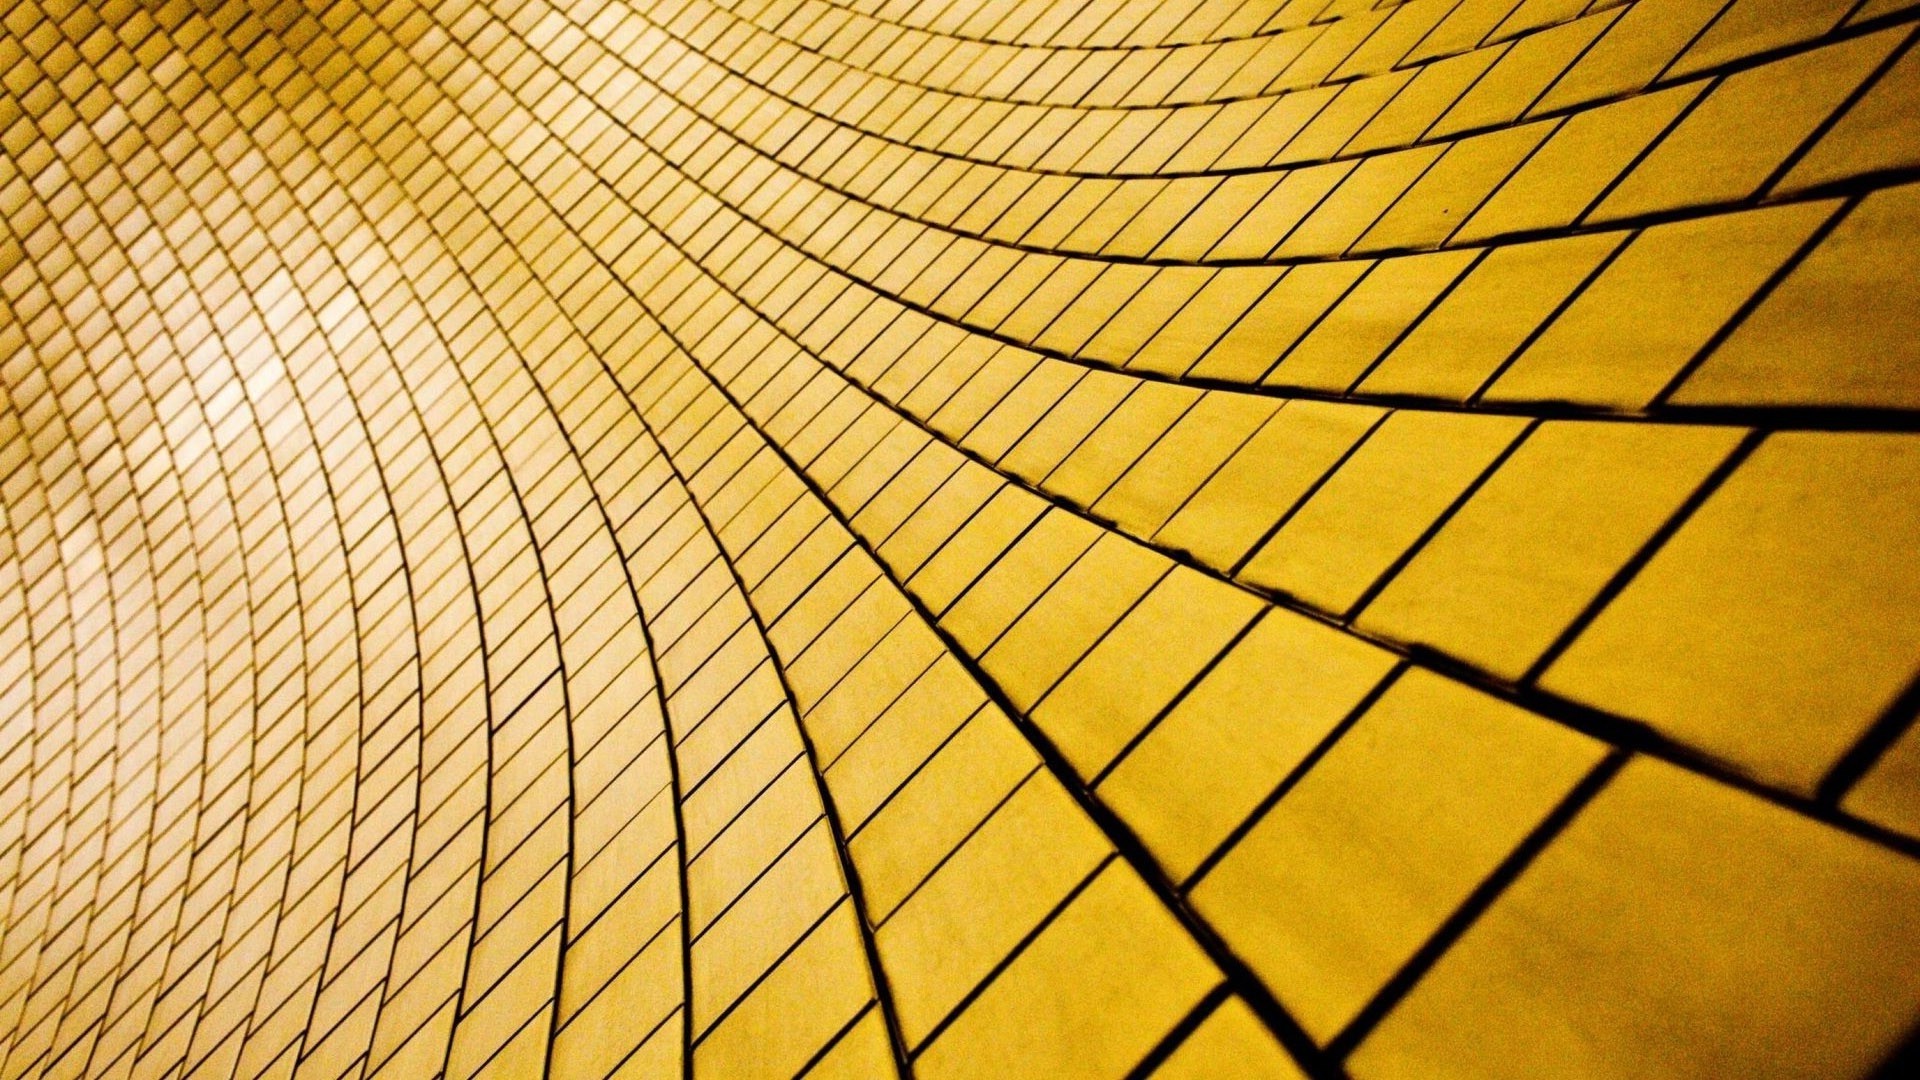 tiled desktop wallpaper,yellow,line,orange,pattern,close up